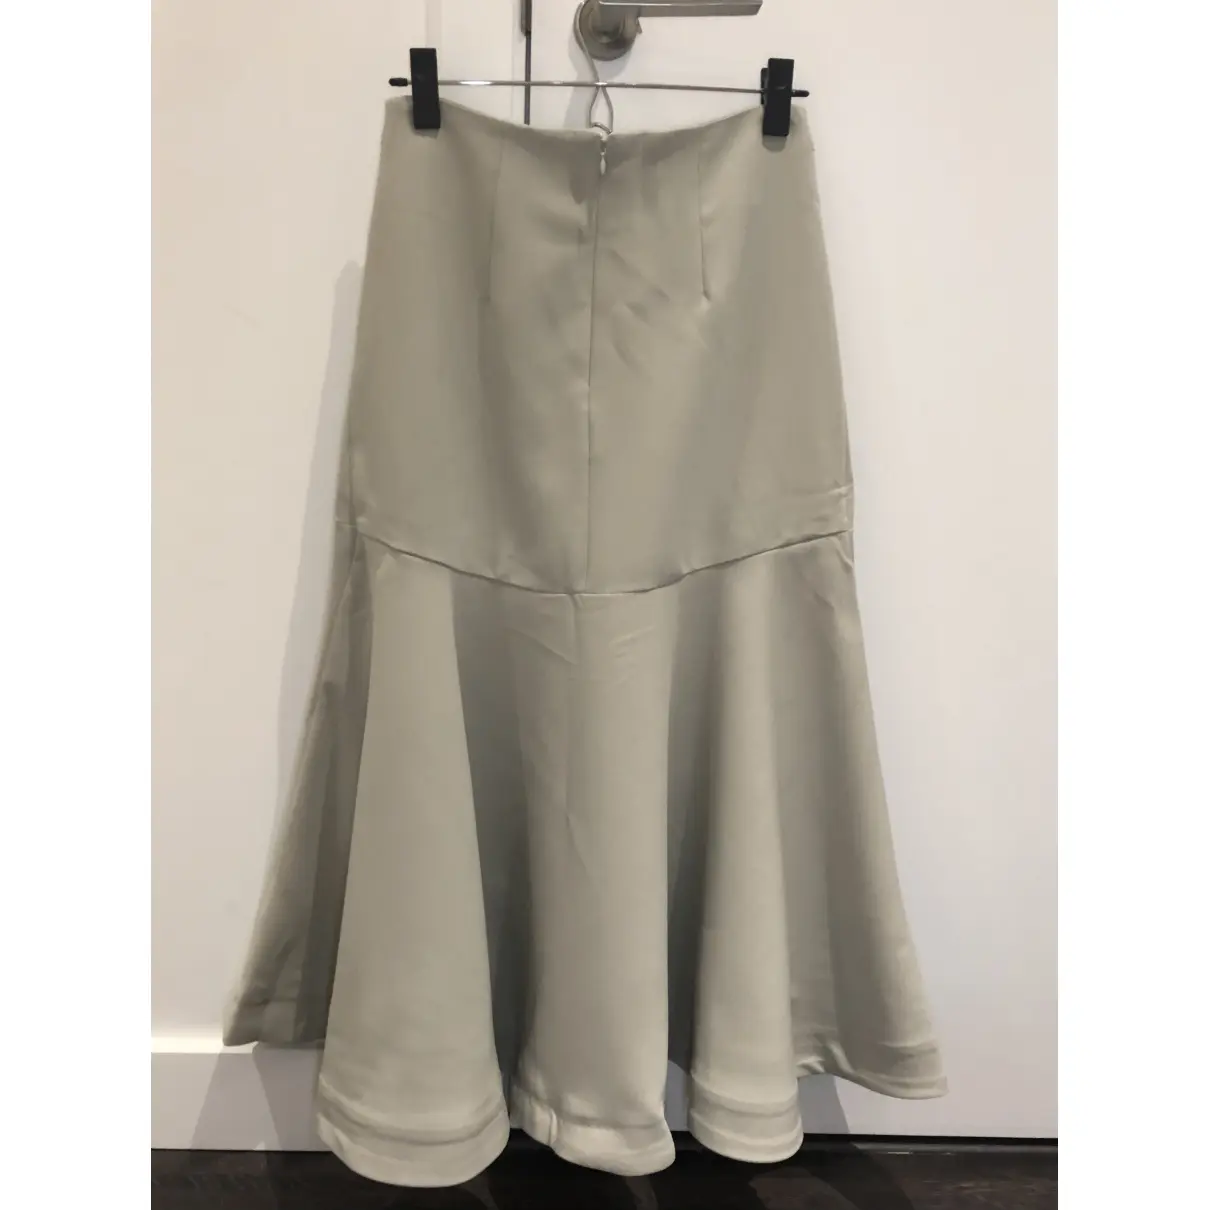 Buy Totême Mid-length skirt online